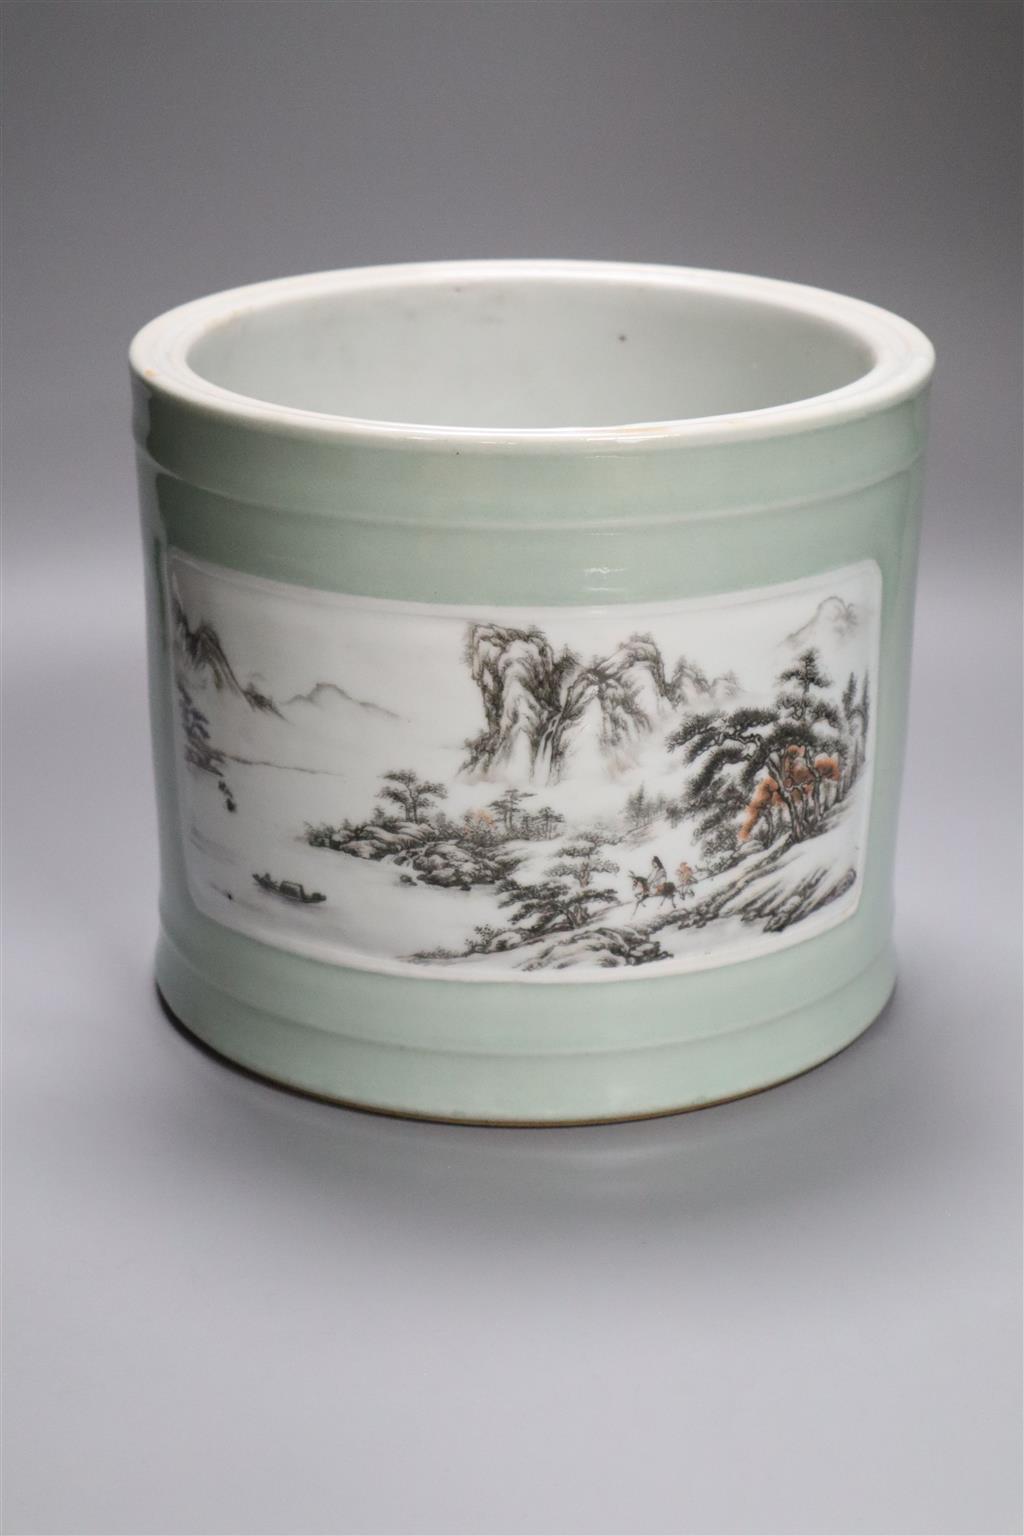 A large Chinese cylindrical celadon glazed brush pot, 18cm high